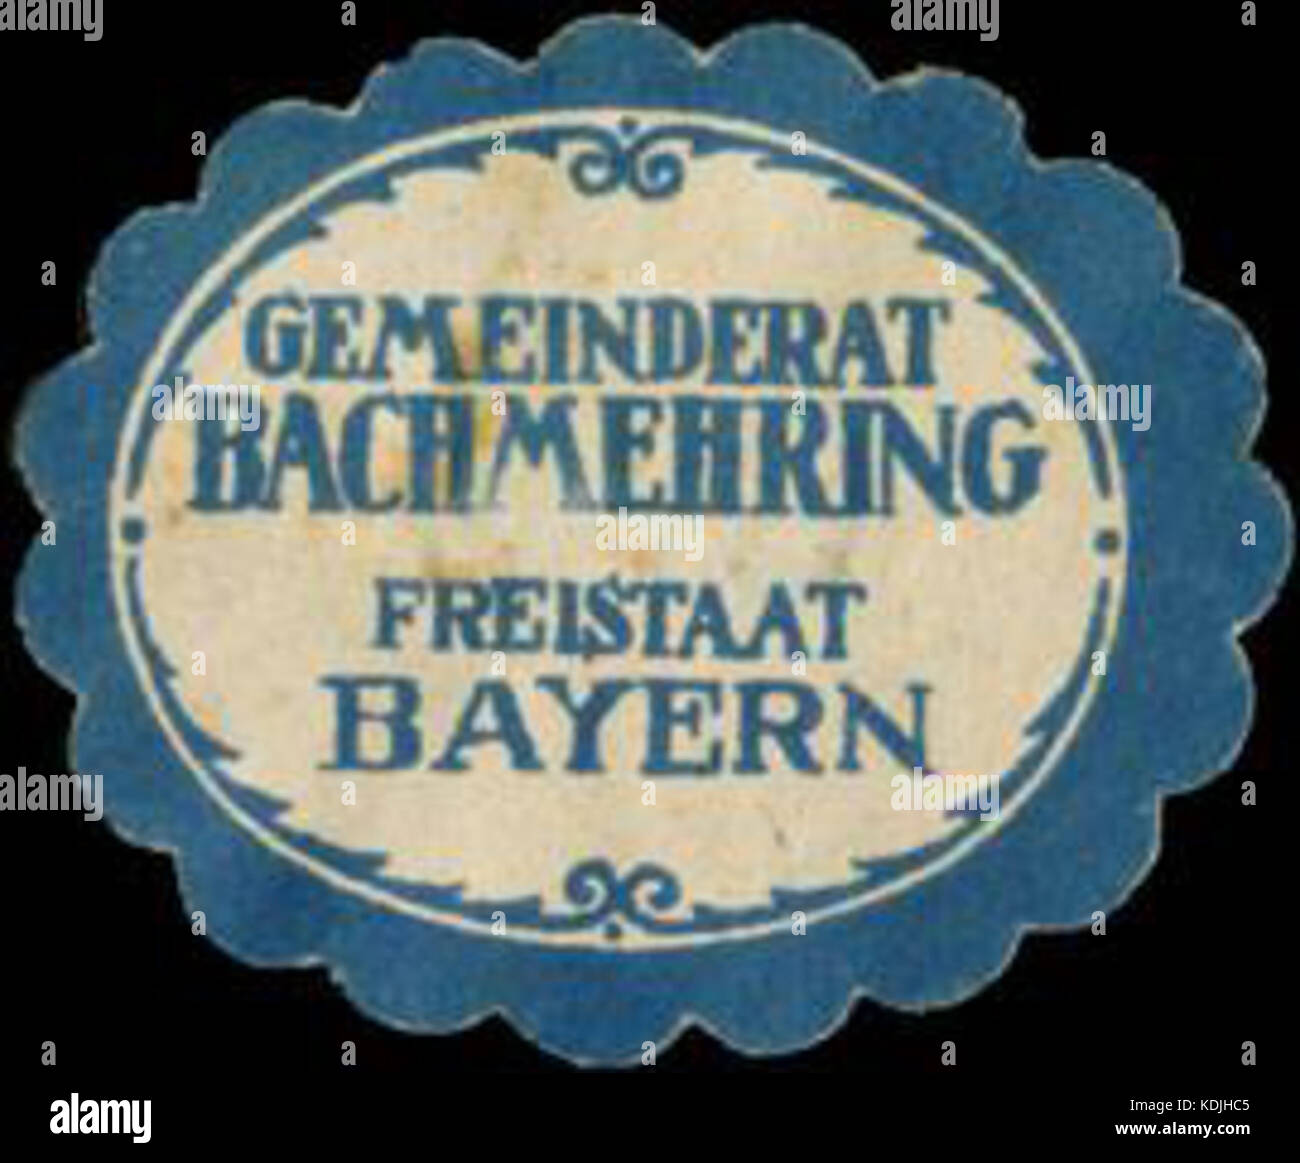 Siegelmarke Gemeinderat Bachmehring Freistaat Bayern W0382756 Stock Photo